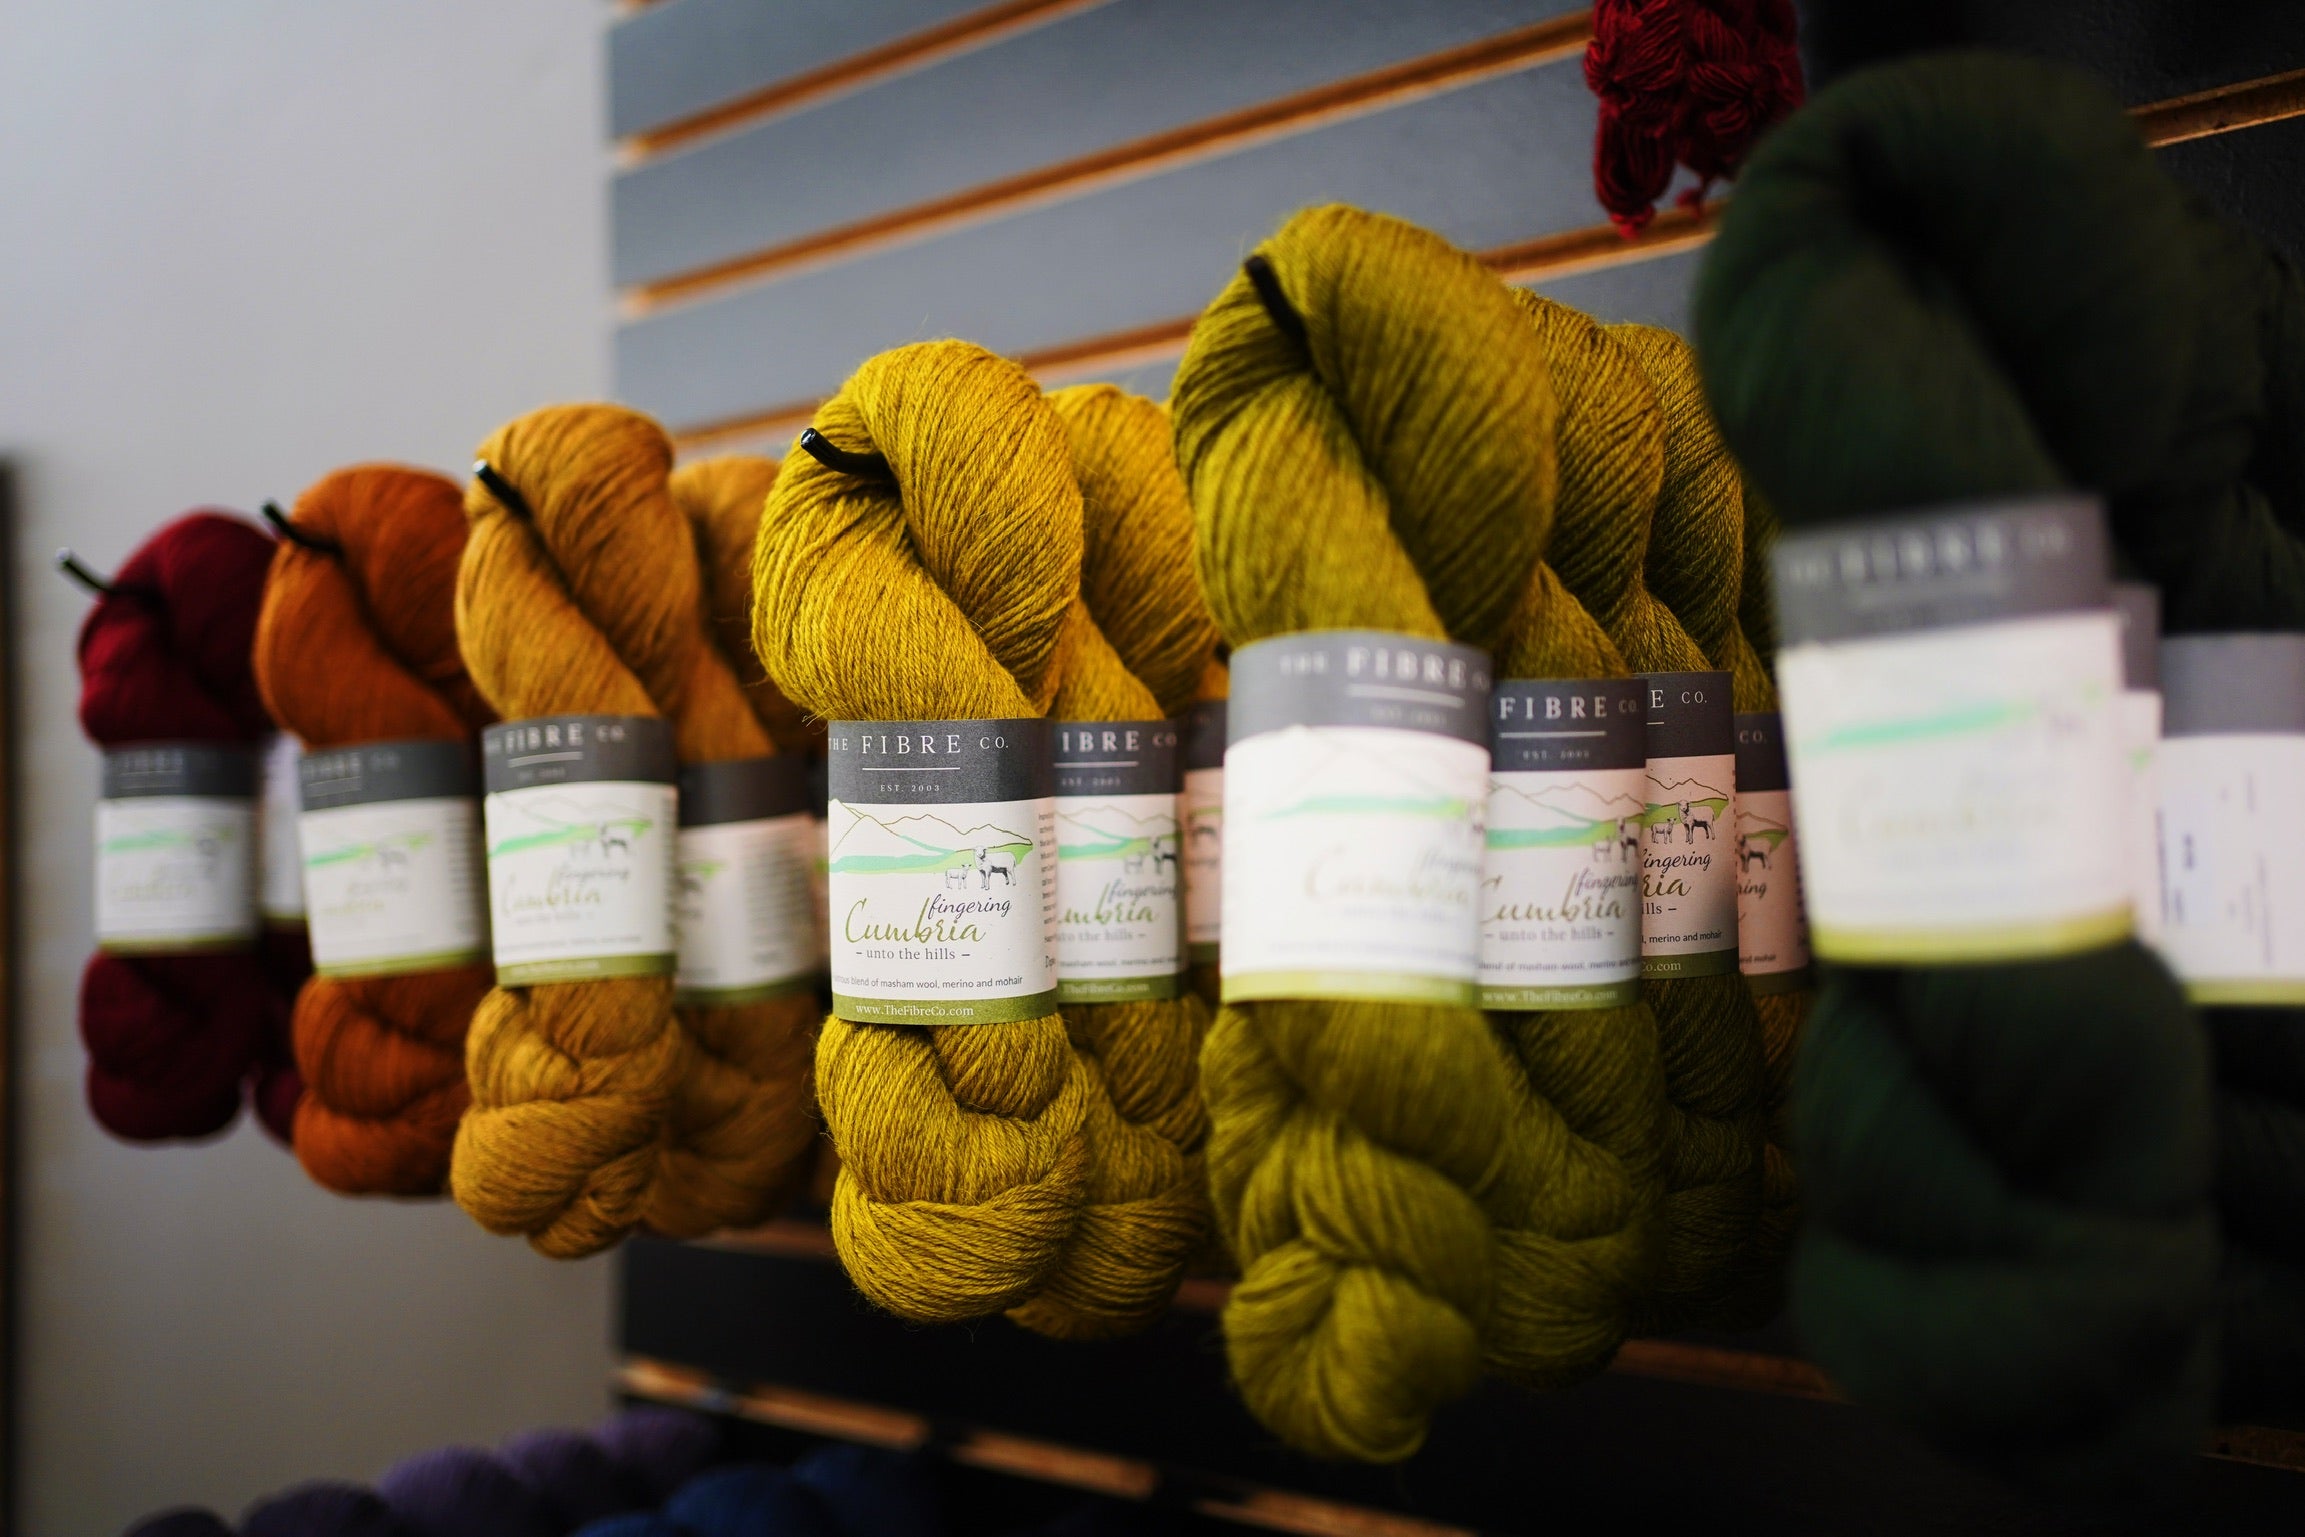 Cumbria Yarn, Merino Wool, Masham Wool and Mohair